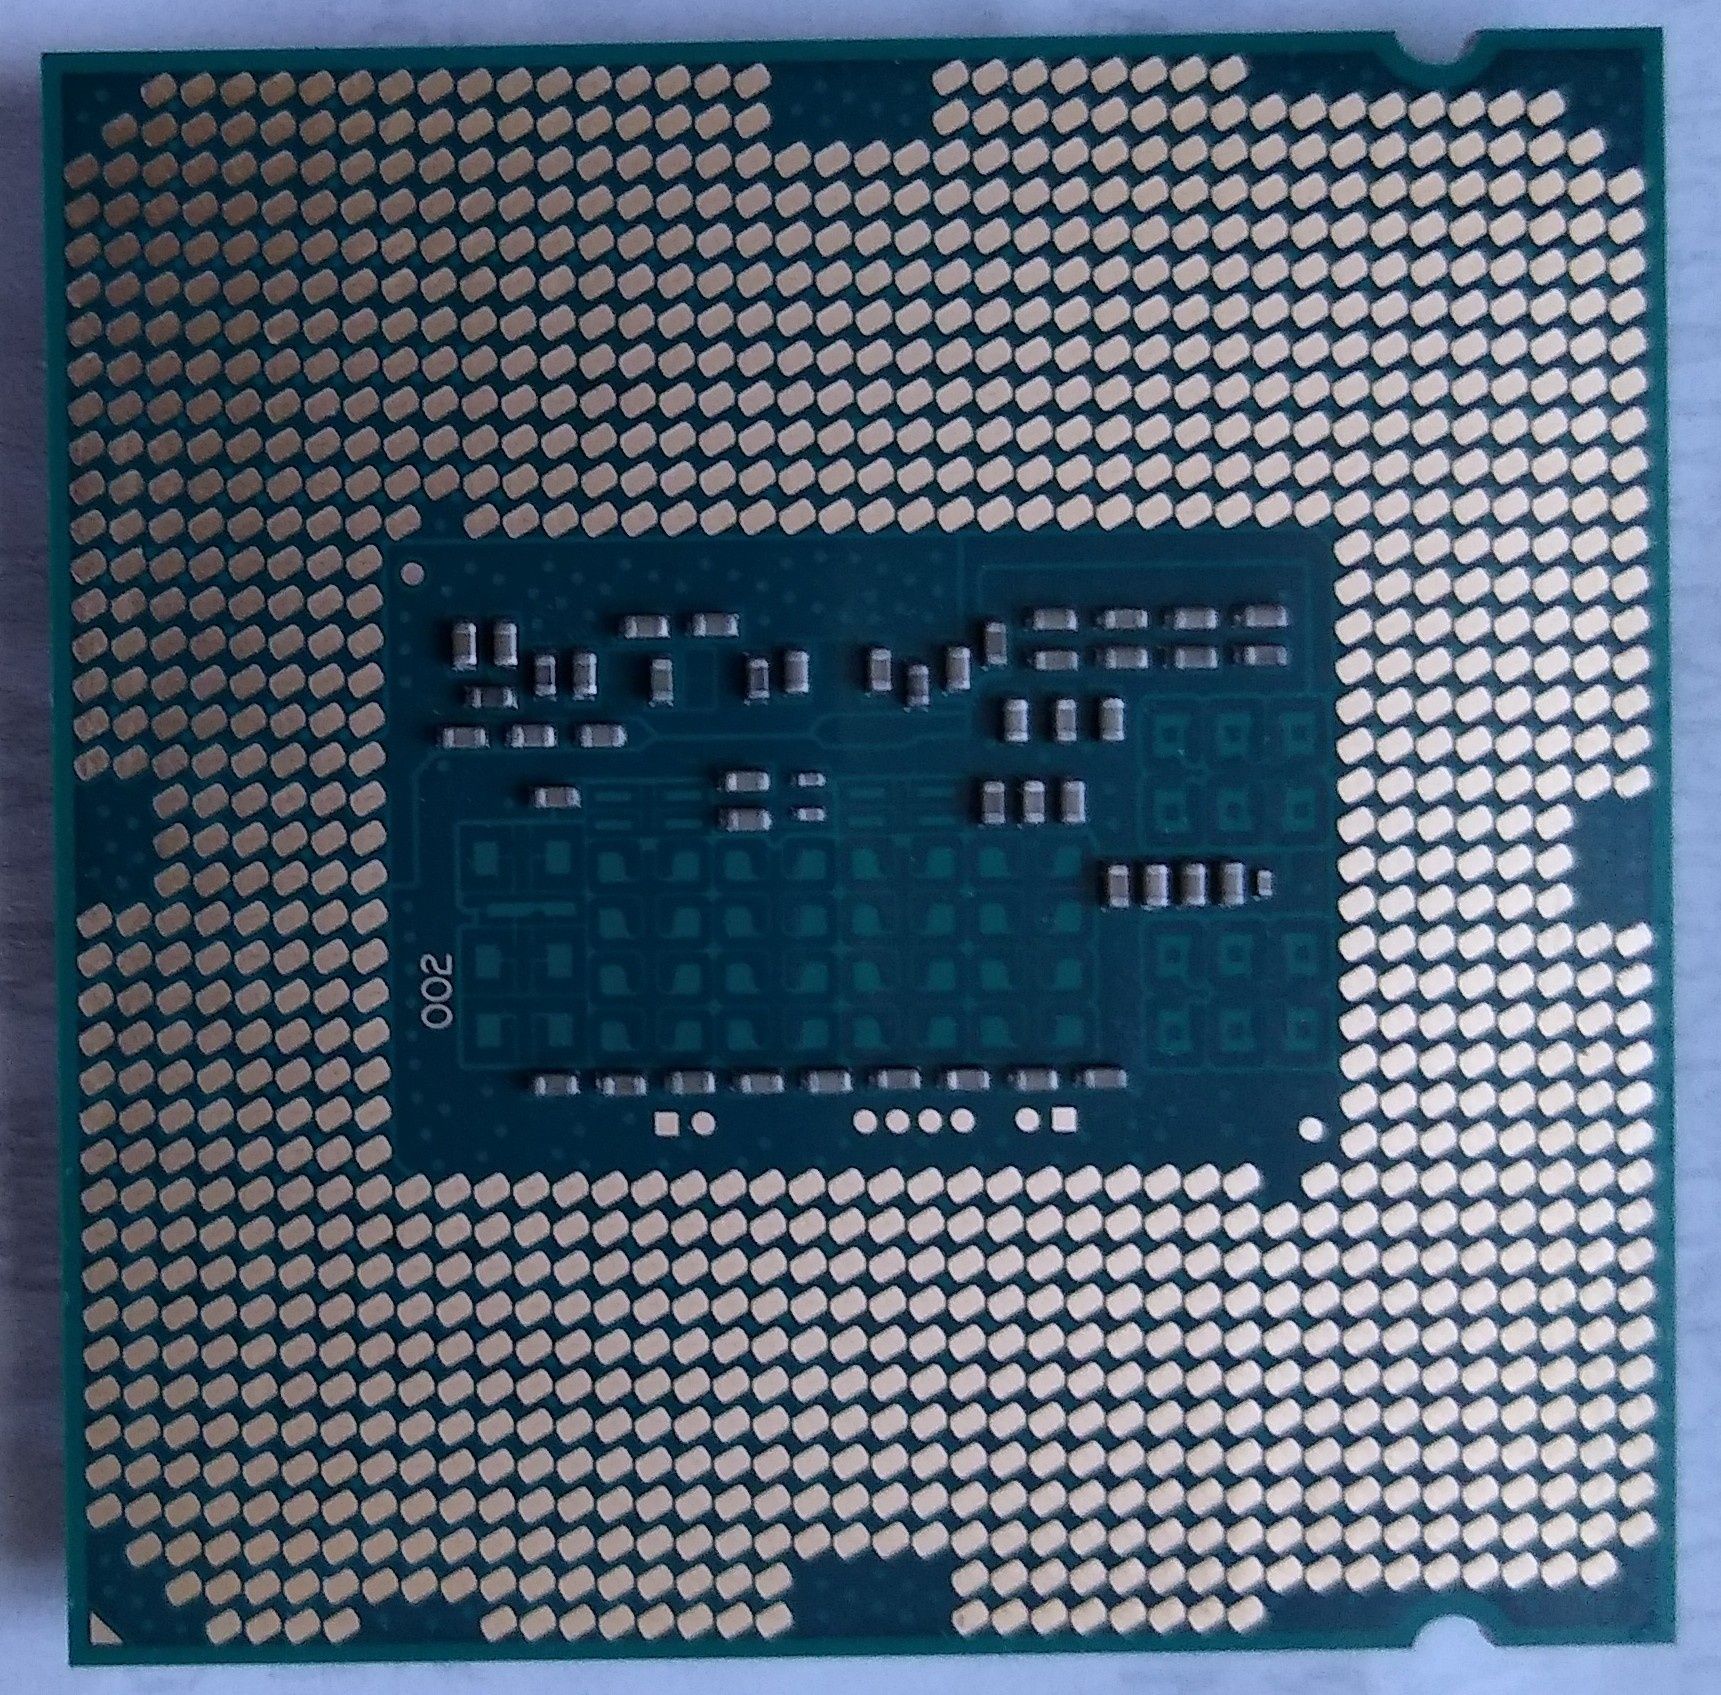 Procesor Intel Core i5-4570 4gen 3.2GHz-3.6GHz 4 rdzenie 22nm LGA1150